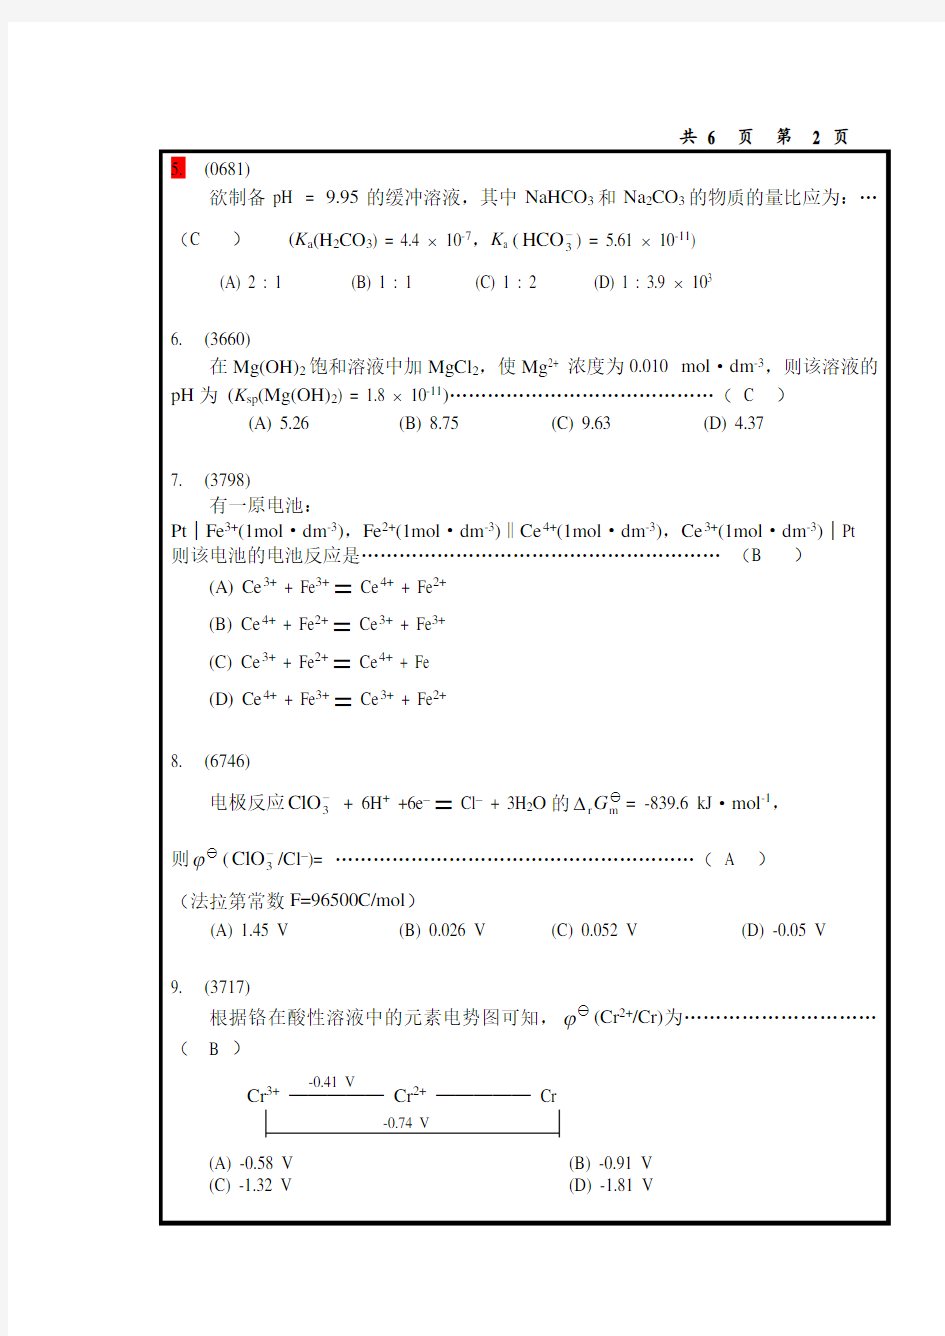 中国海洋大学无机及分析化学期末考试试卷分析-共6页